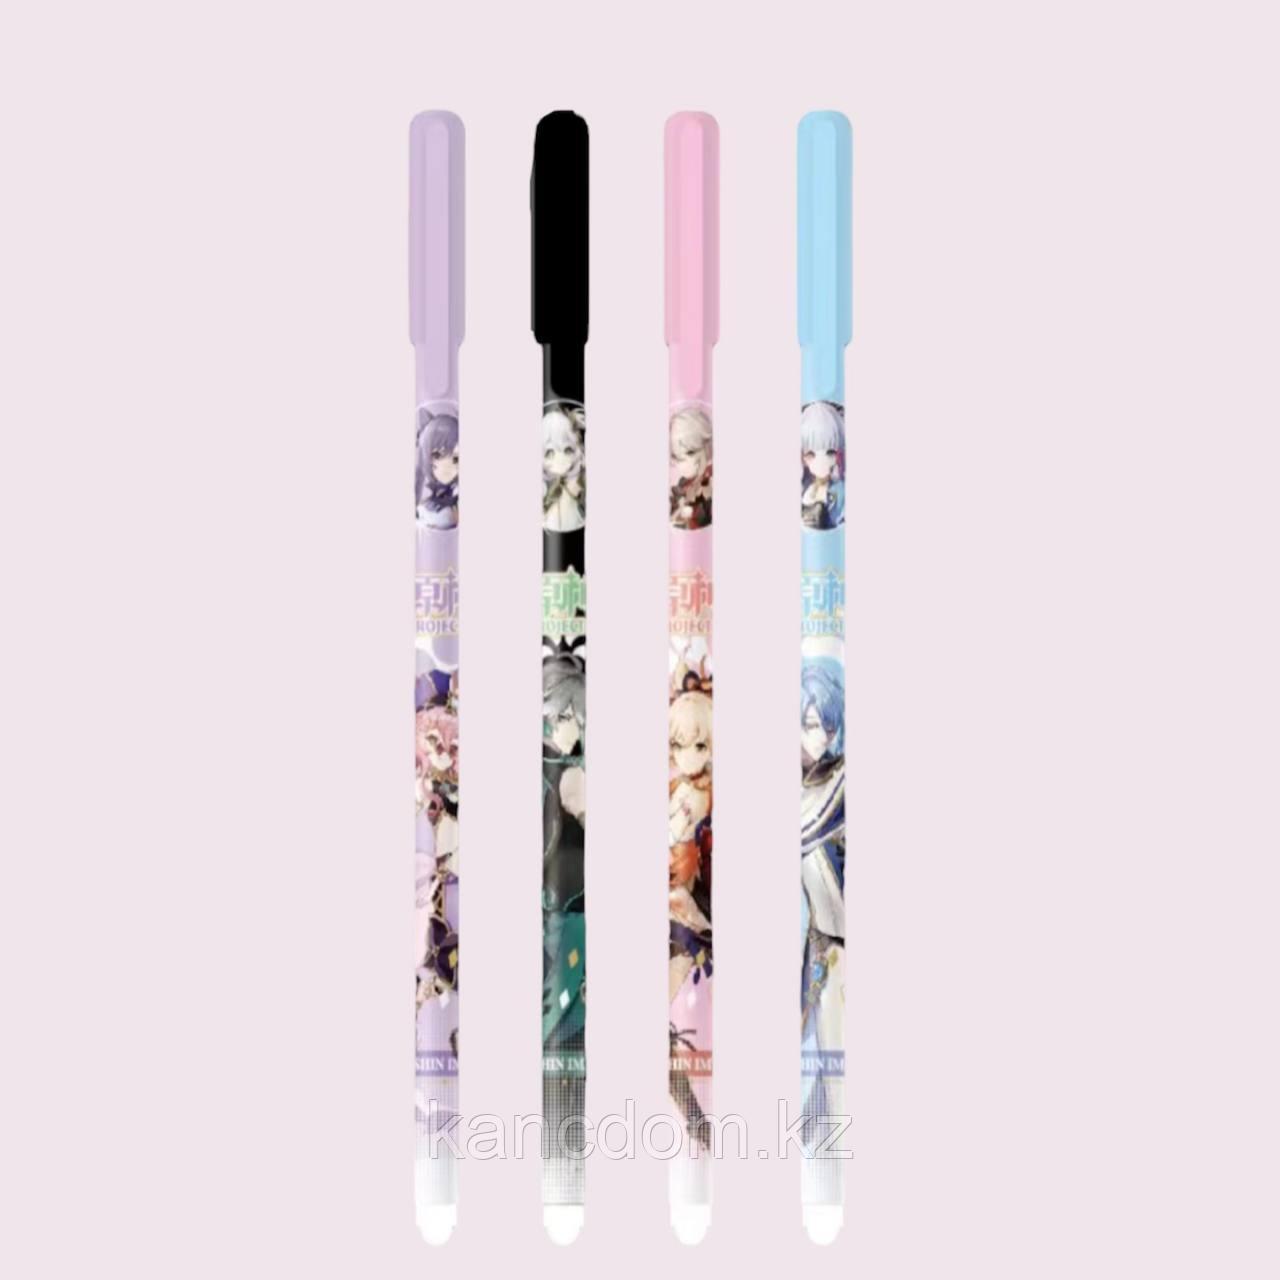 Ручка Гелиевая стирающая 0.5мм Anime 006 blue 12шт